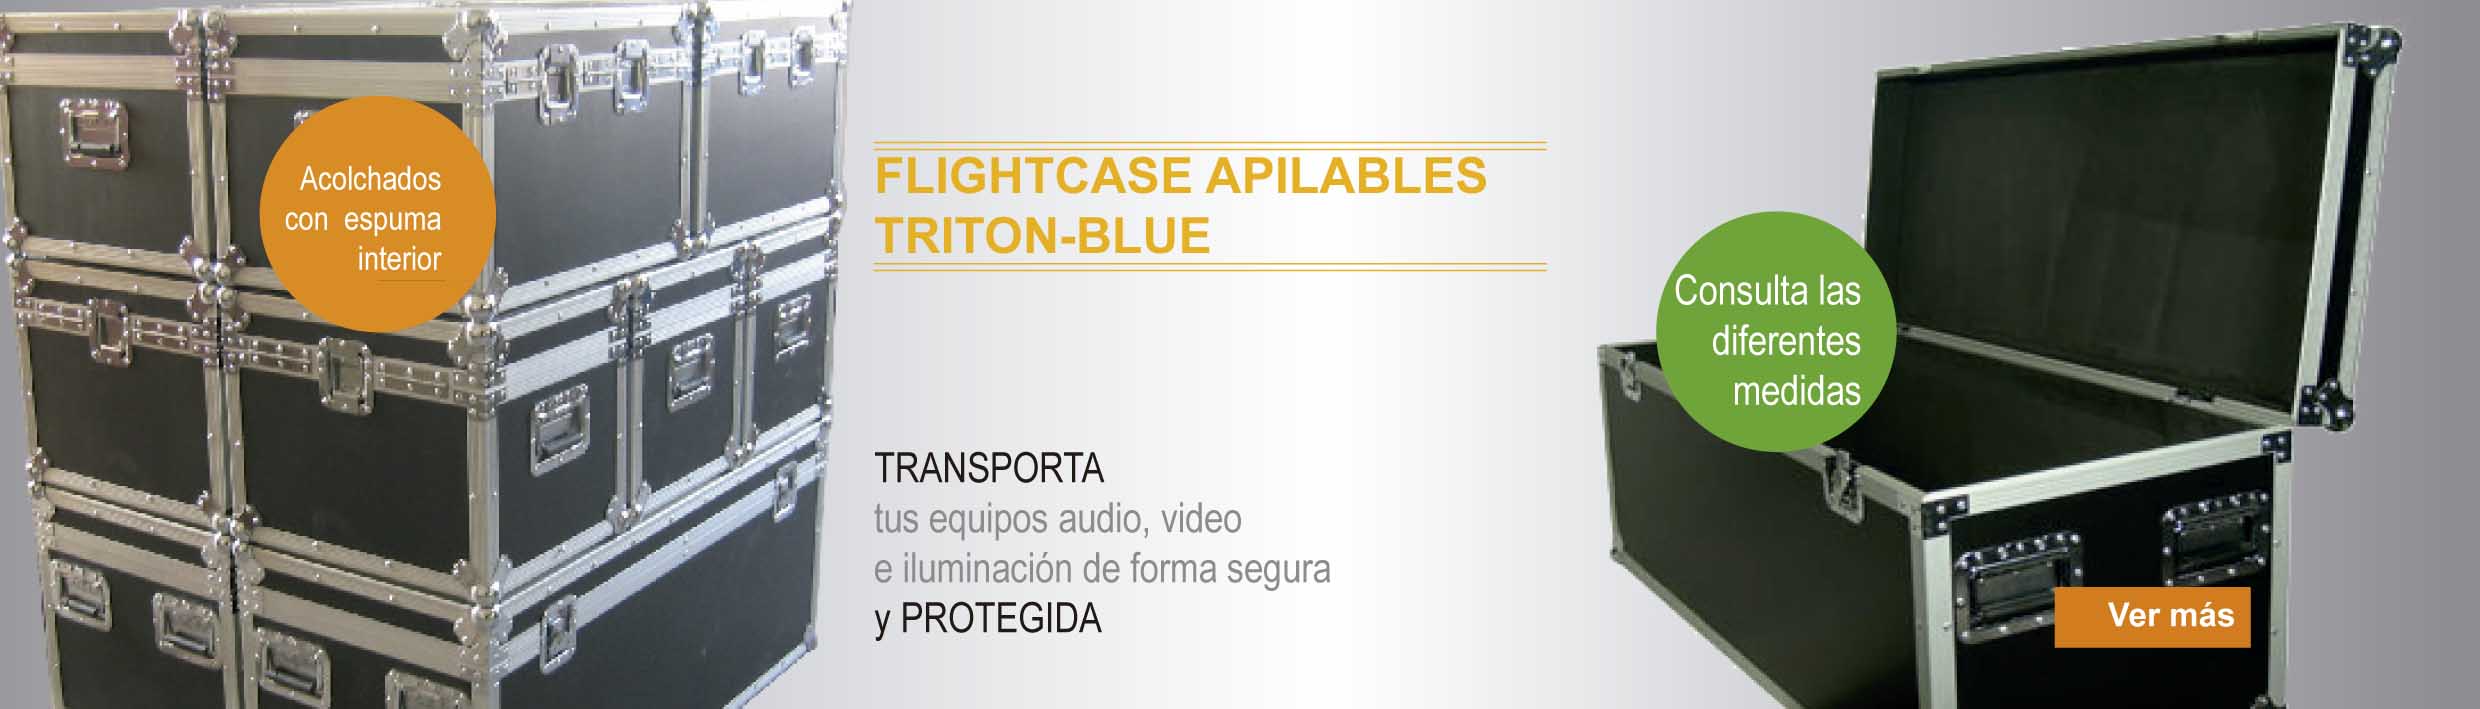 flightcase acochados con espuma interior deferentes tamaños para audio, video e iluminacion triton-blue